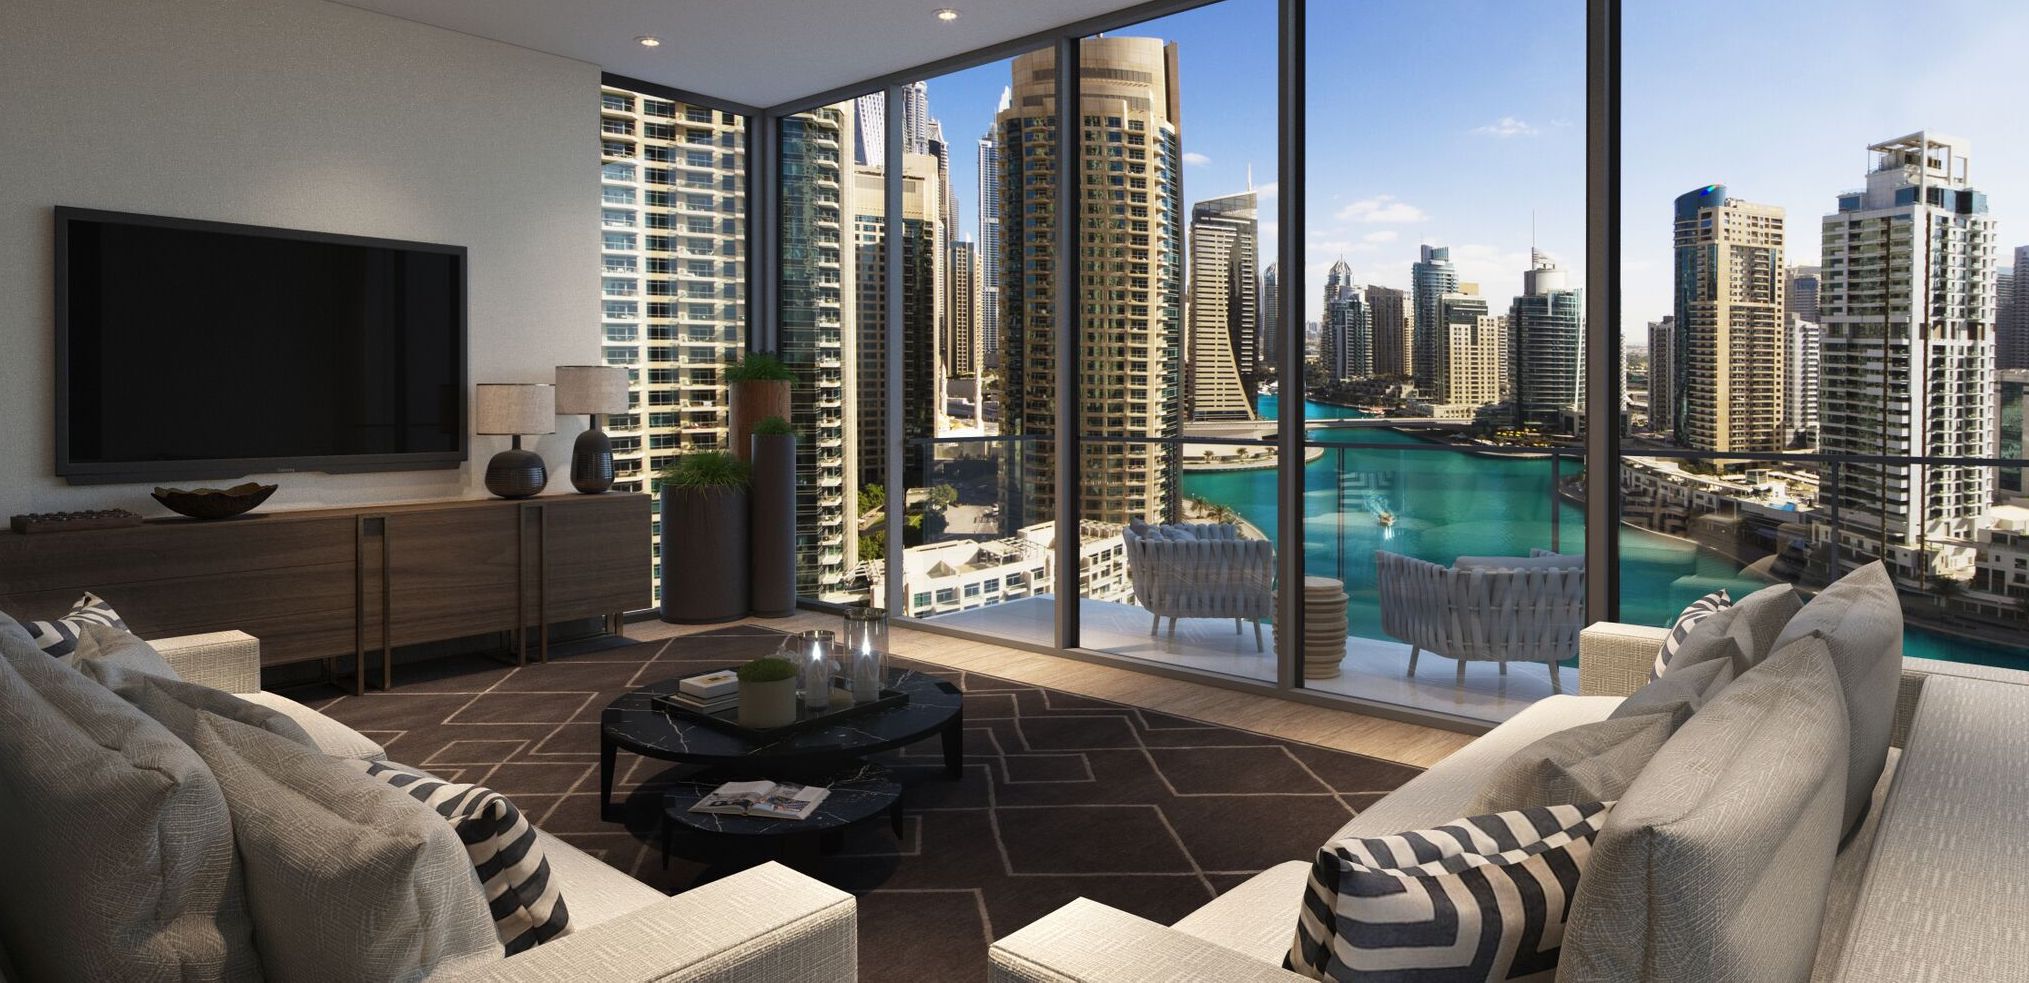 Дубай квартиры квартира на берегу моря купить недорого